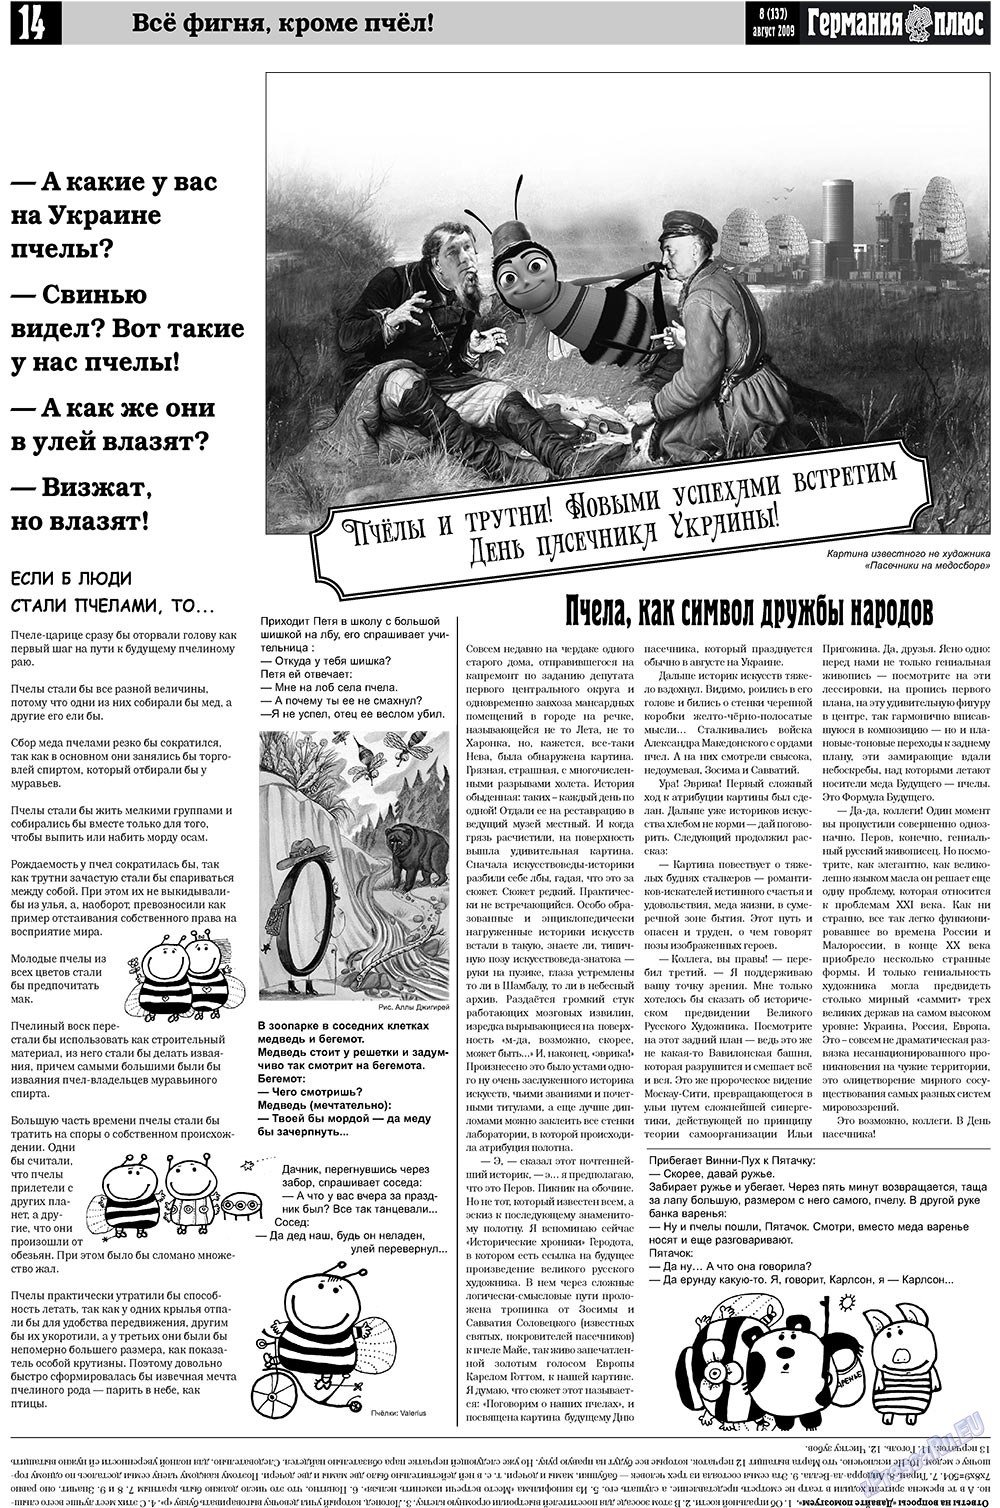 Германия плюс, газета. 2009 №8 стр.18